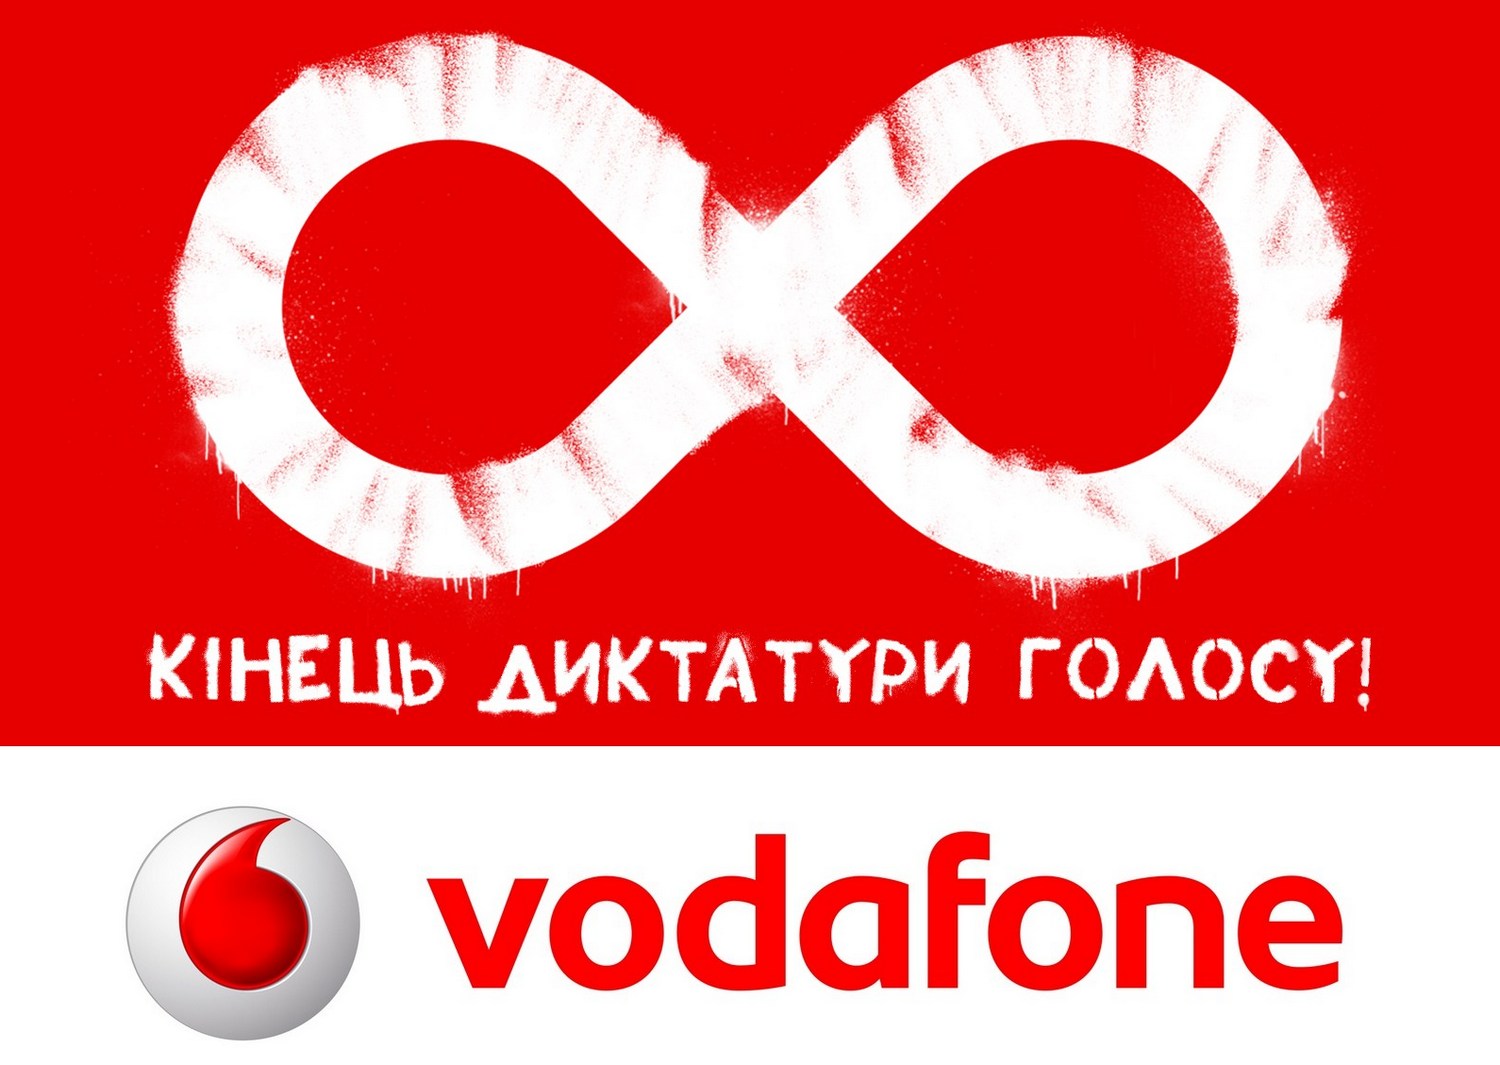 Компанія Vodafone Україна анонсувала новий термін дії тарифів лінійки Vodafone Unlim 3G - до 31 травня 2018 року включно